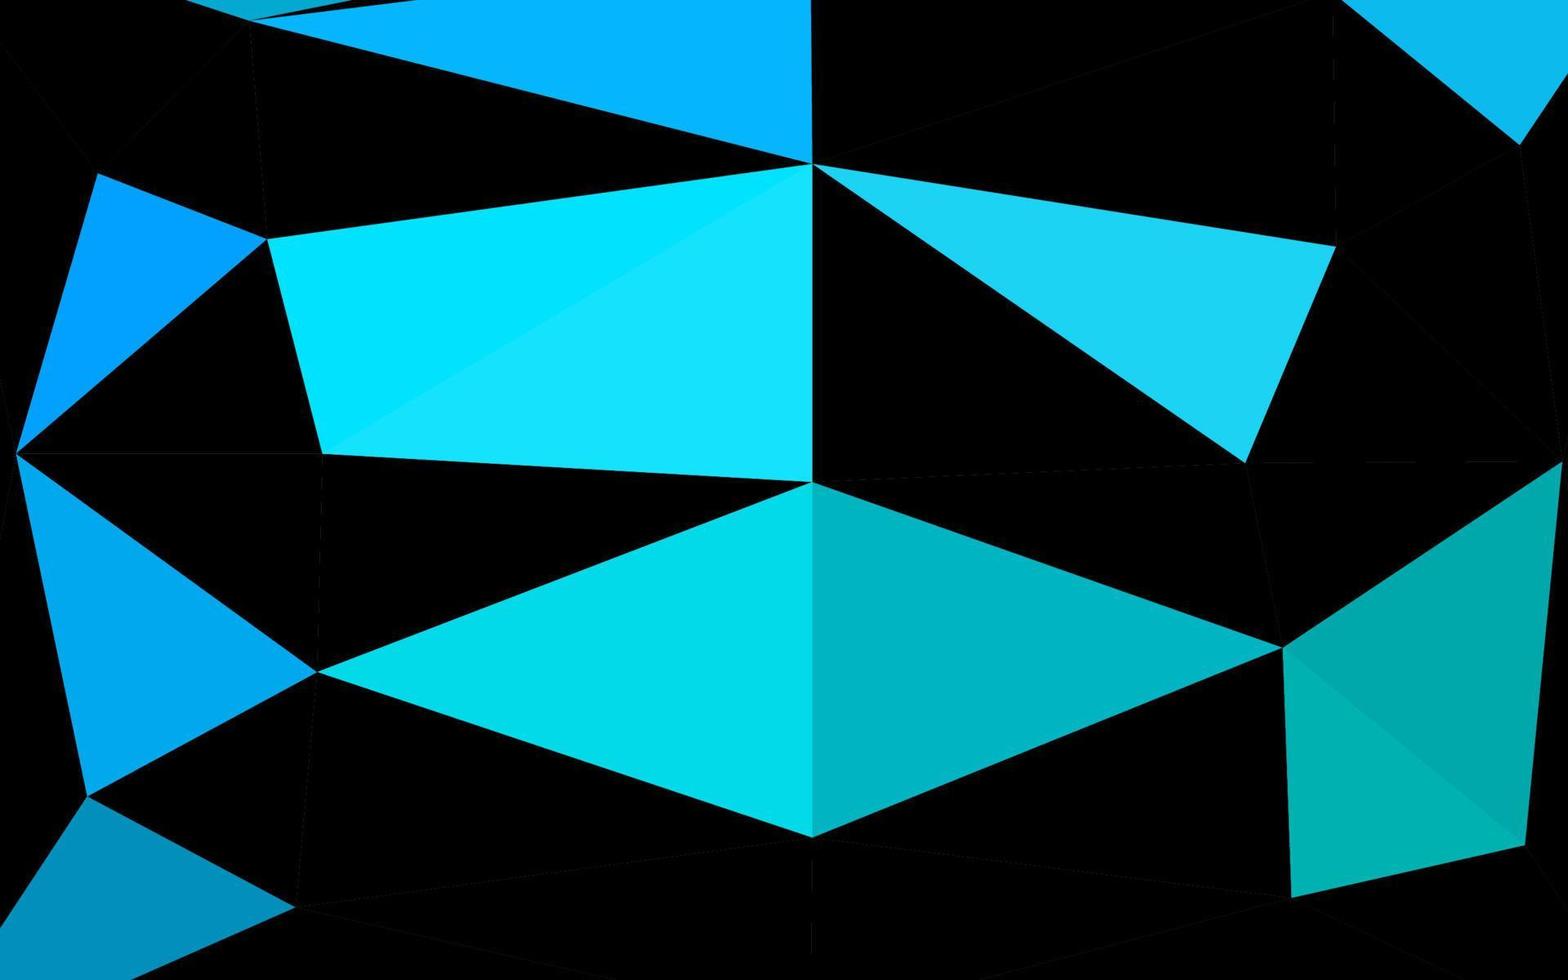 modèle de mosaïque triangle vecteur bleu clair, vert.